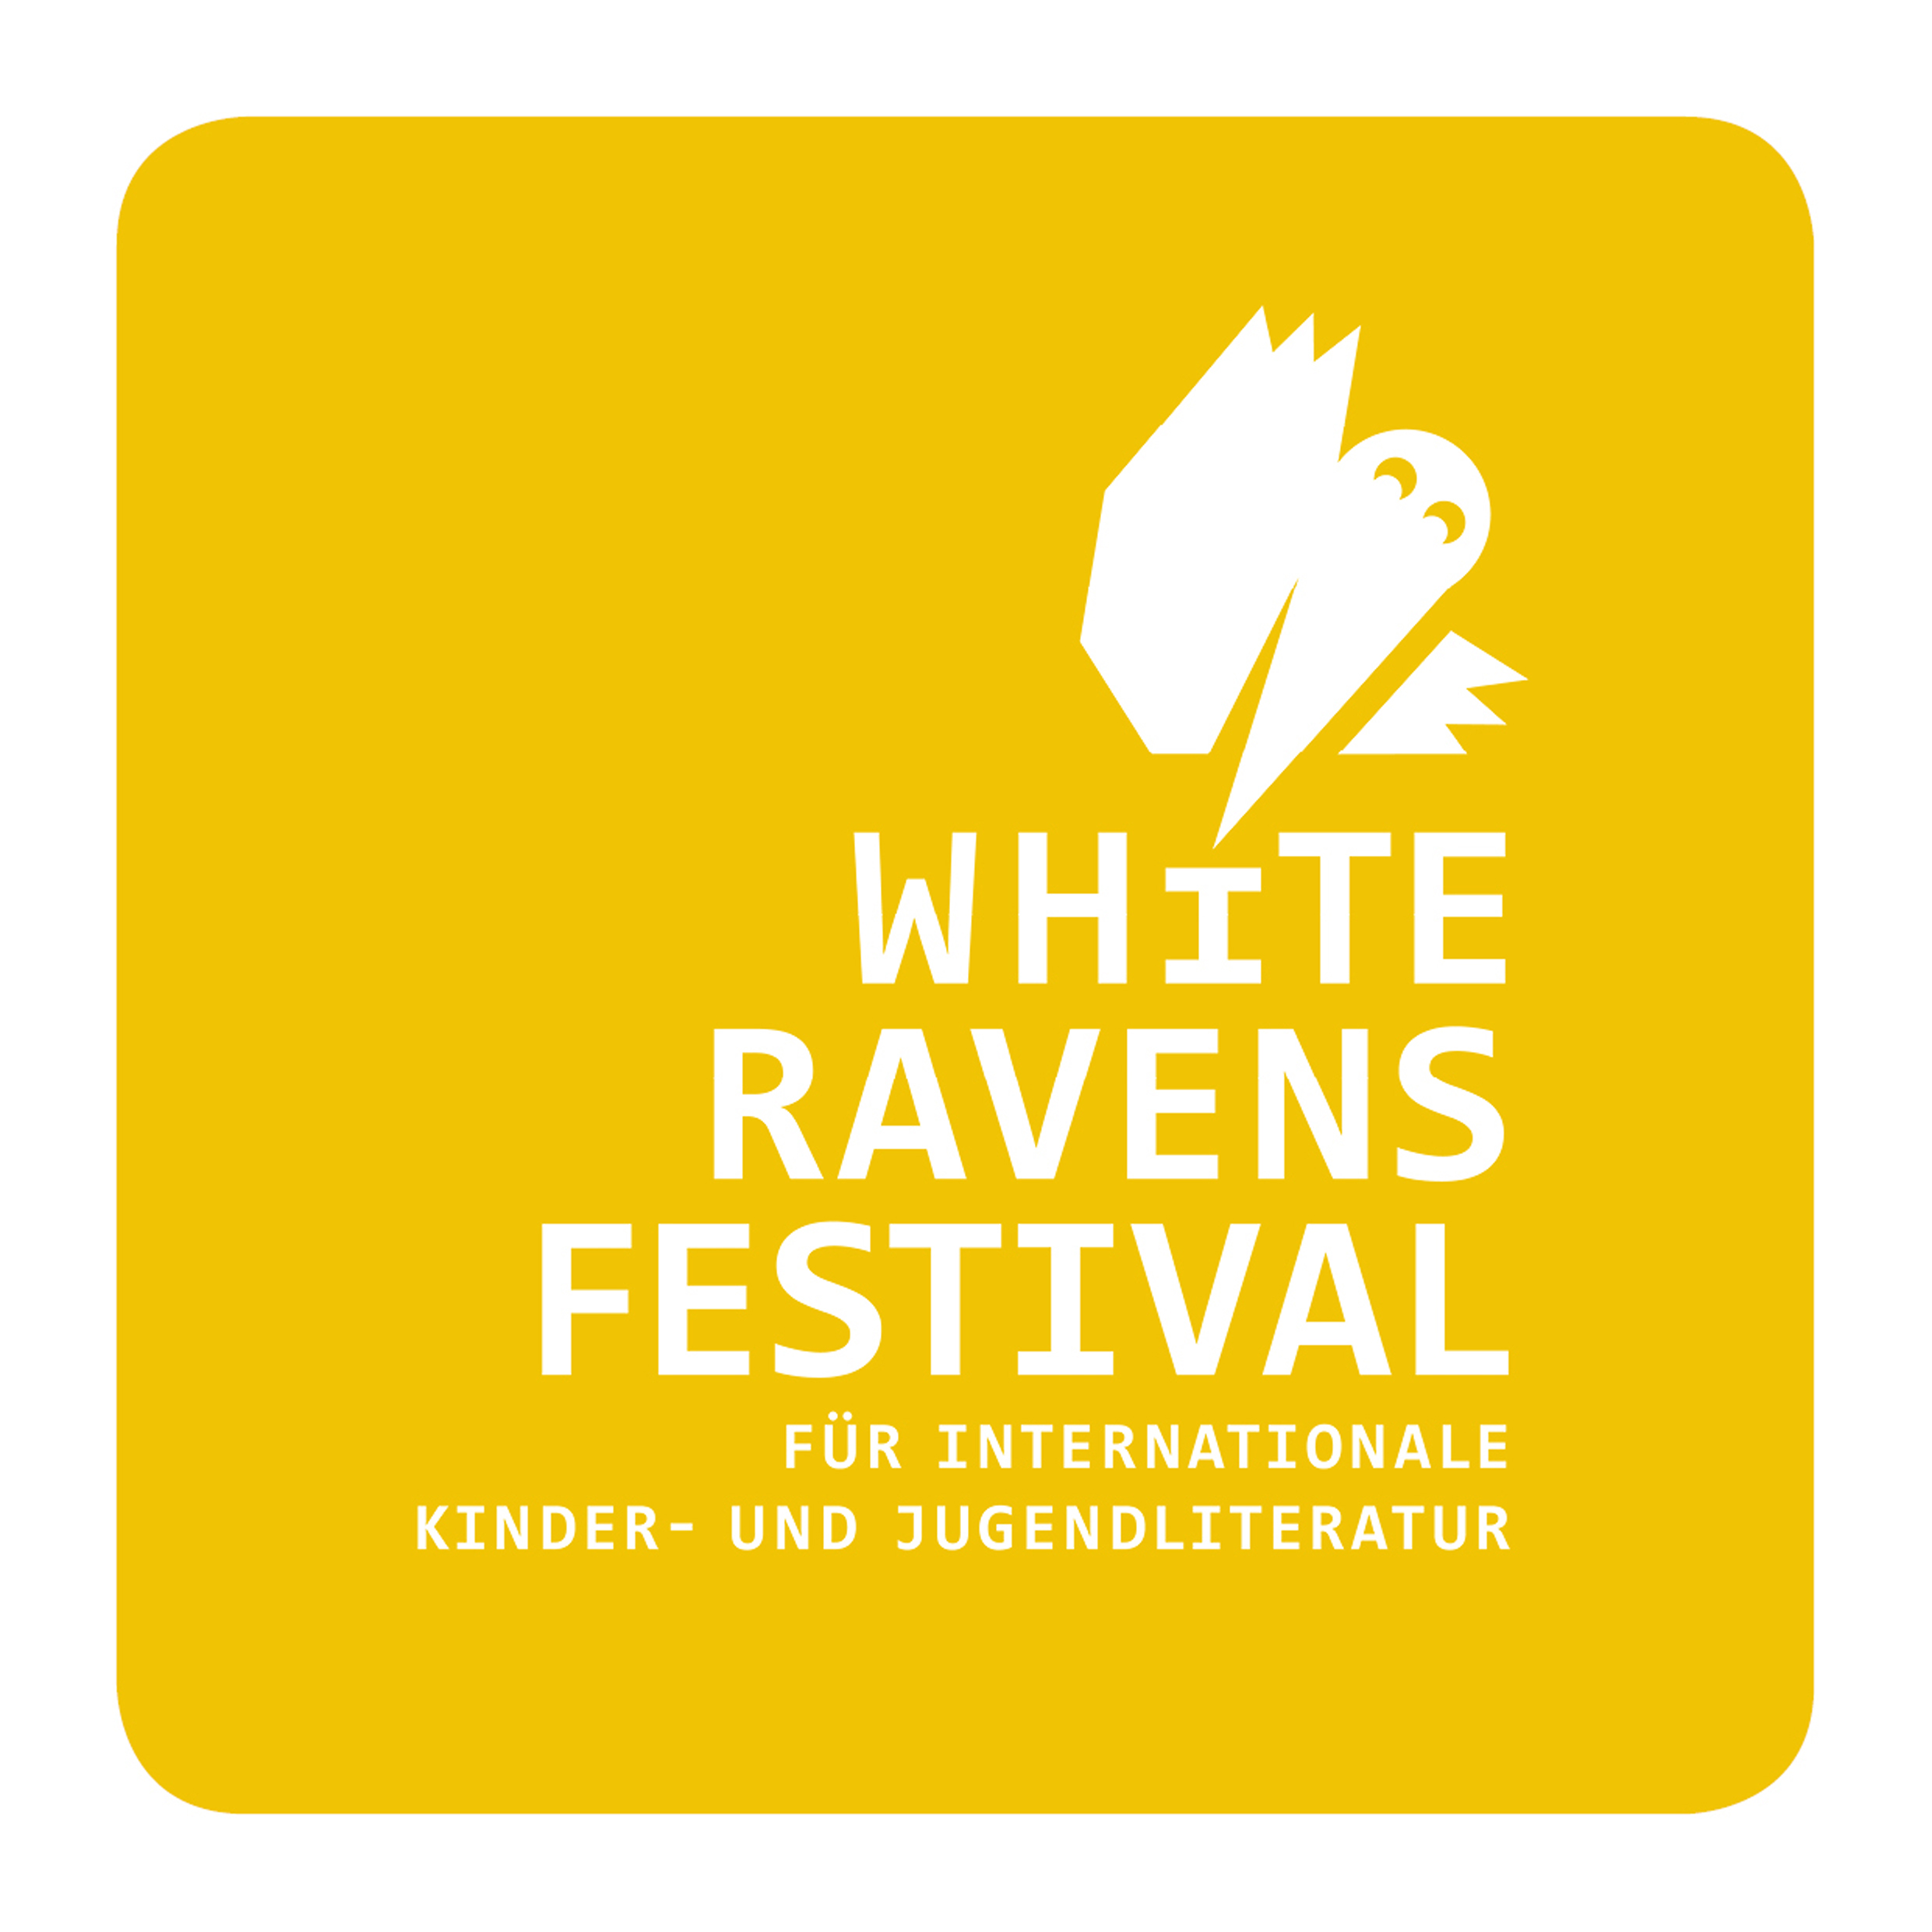 White Ravens Festival